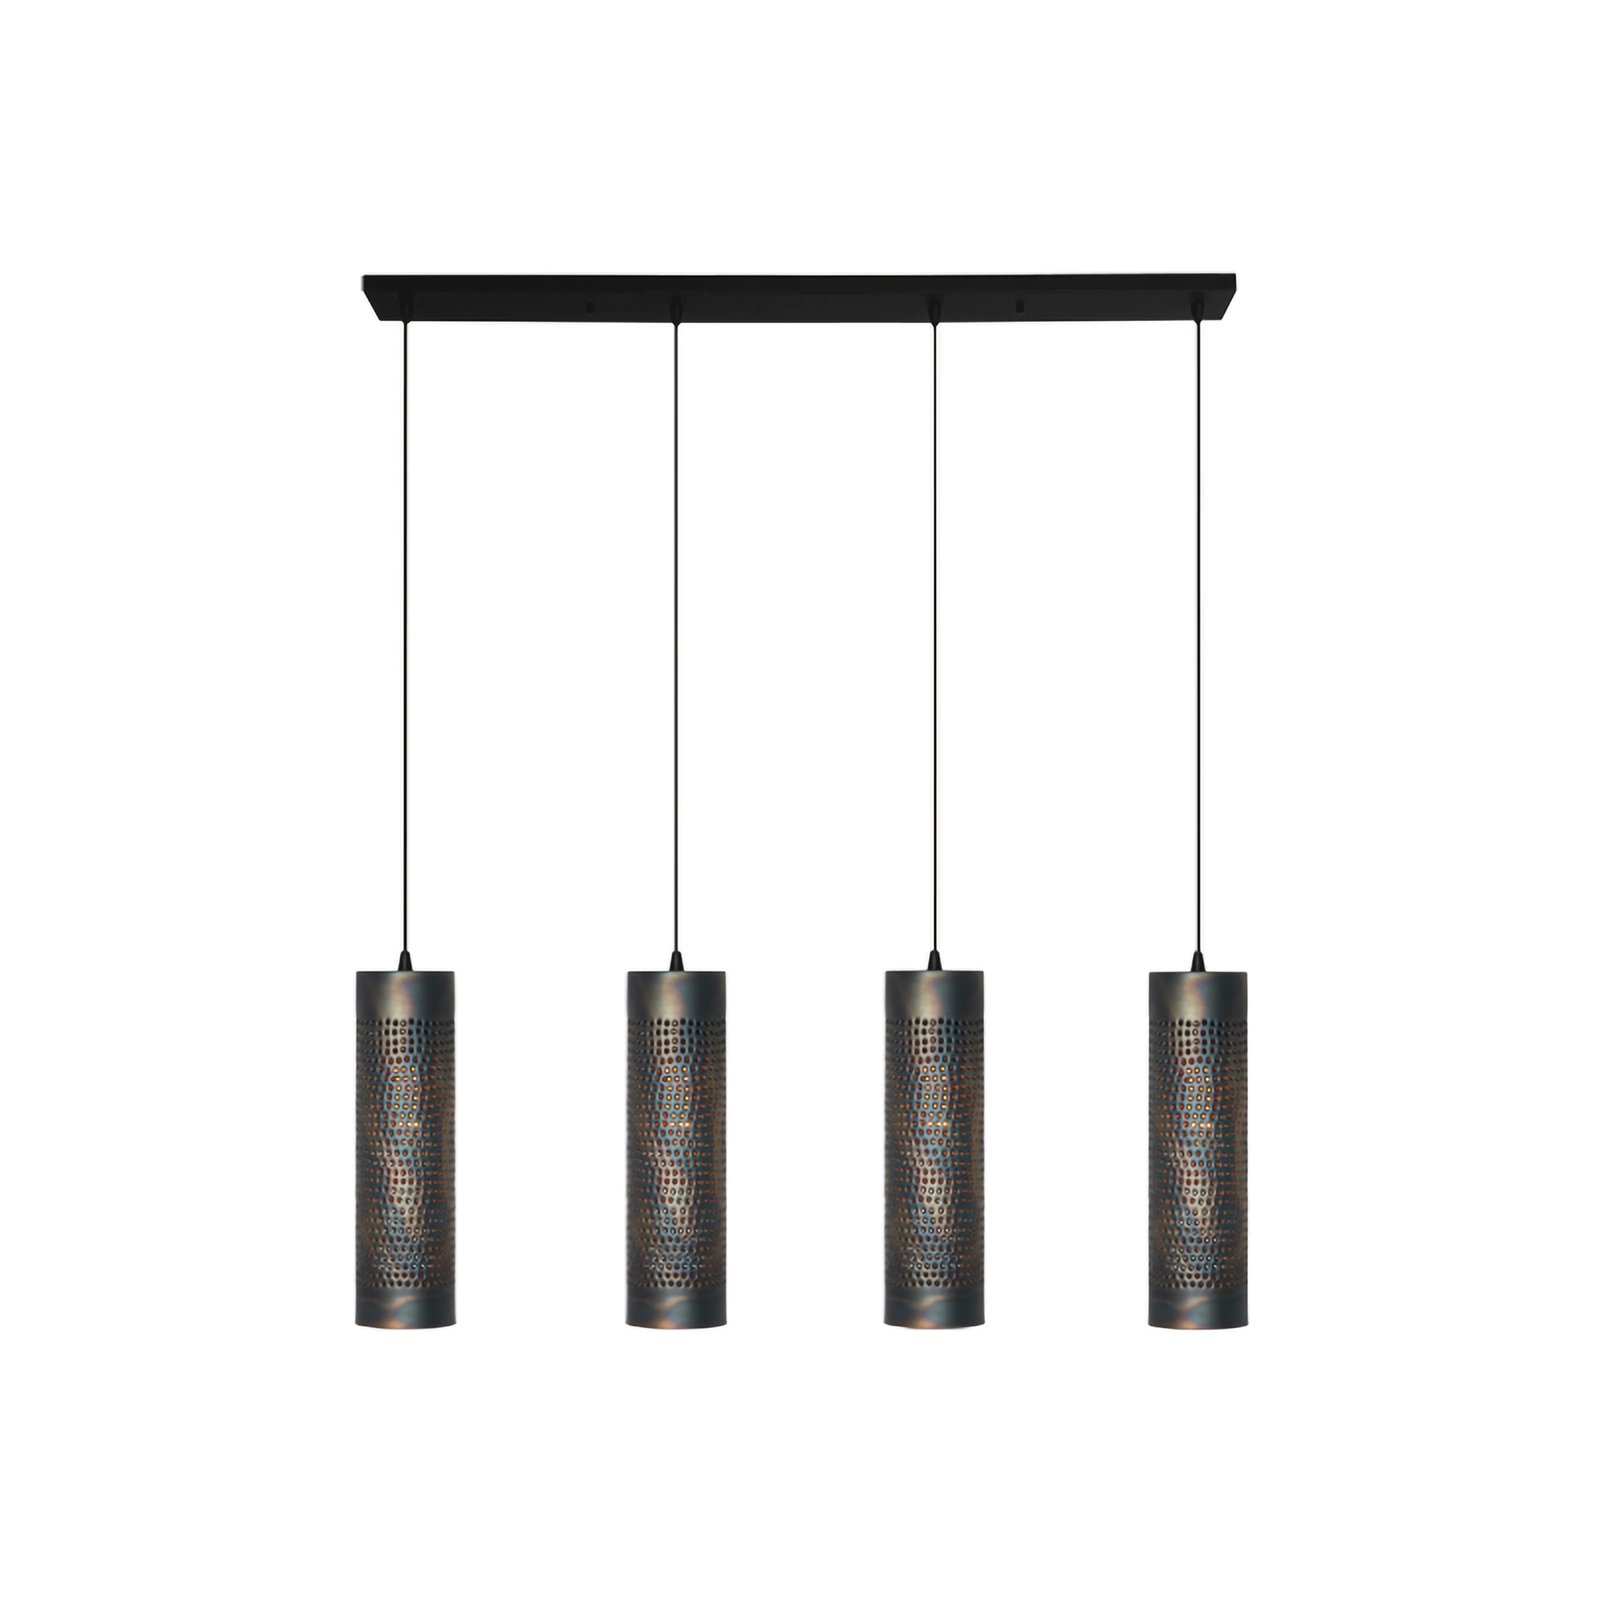 Suspension Forato, longueur 120 cm, brun, 4 lampes, métal